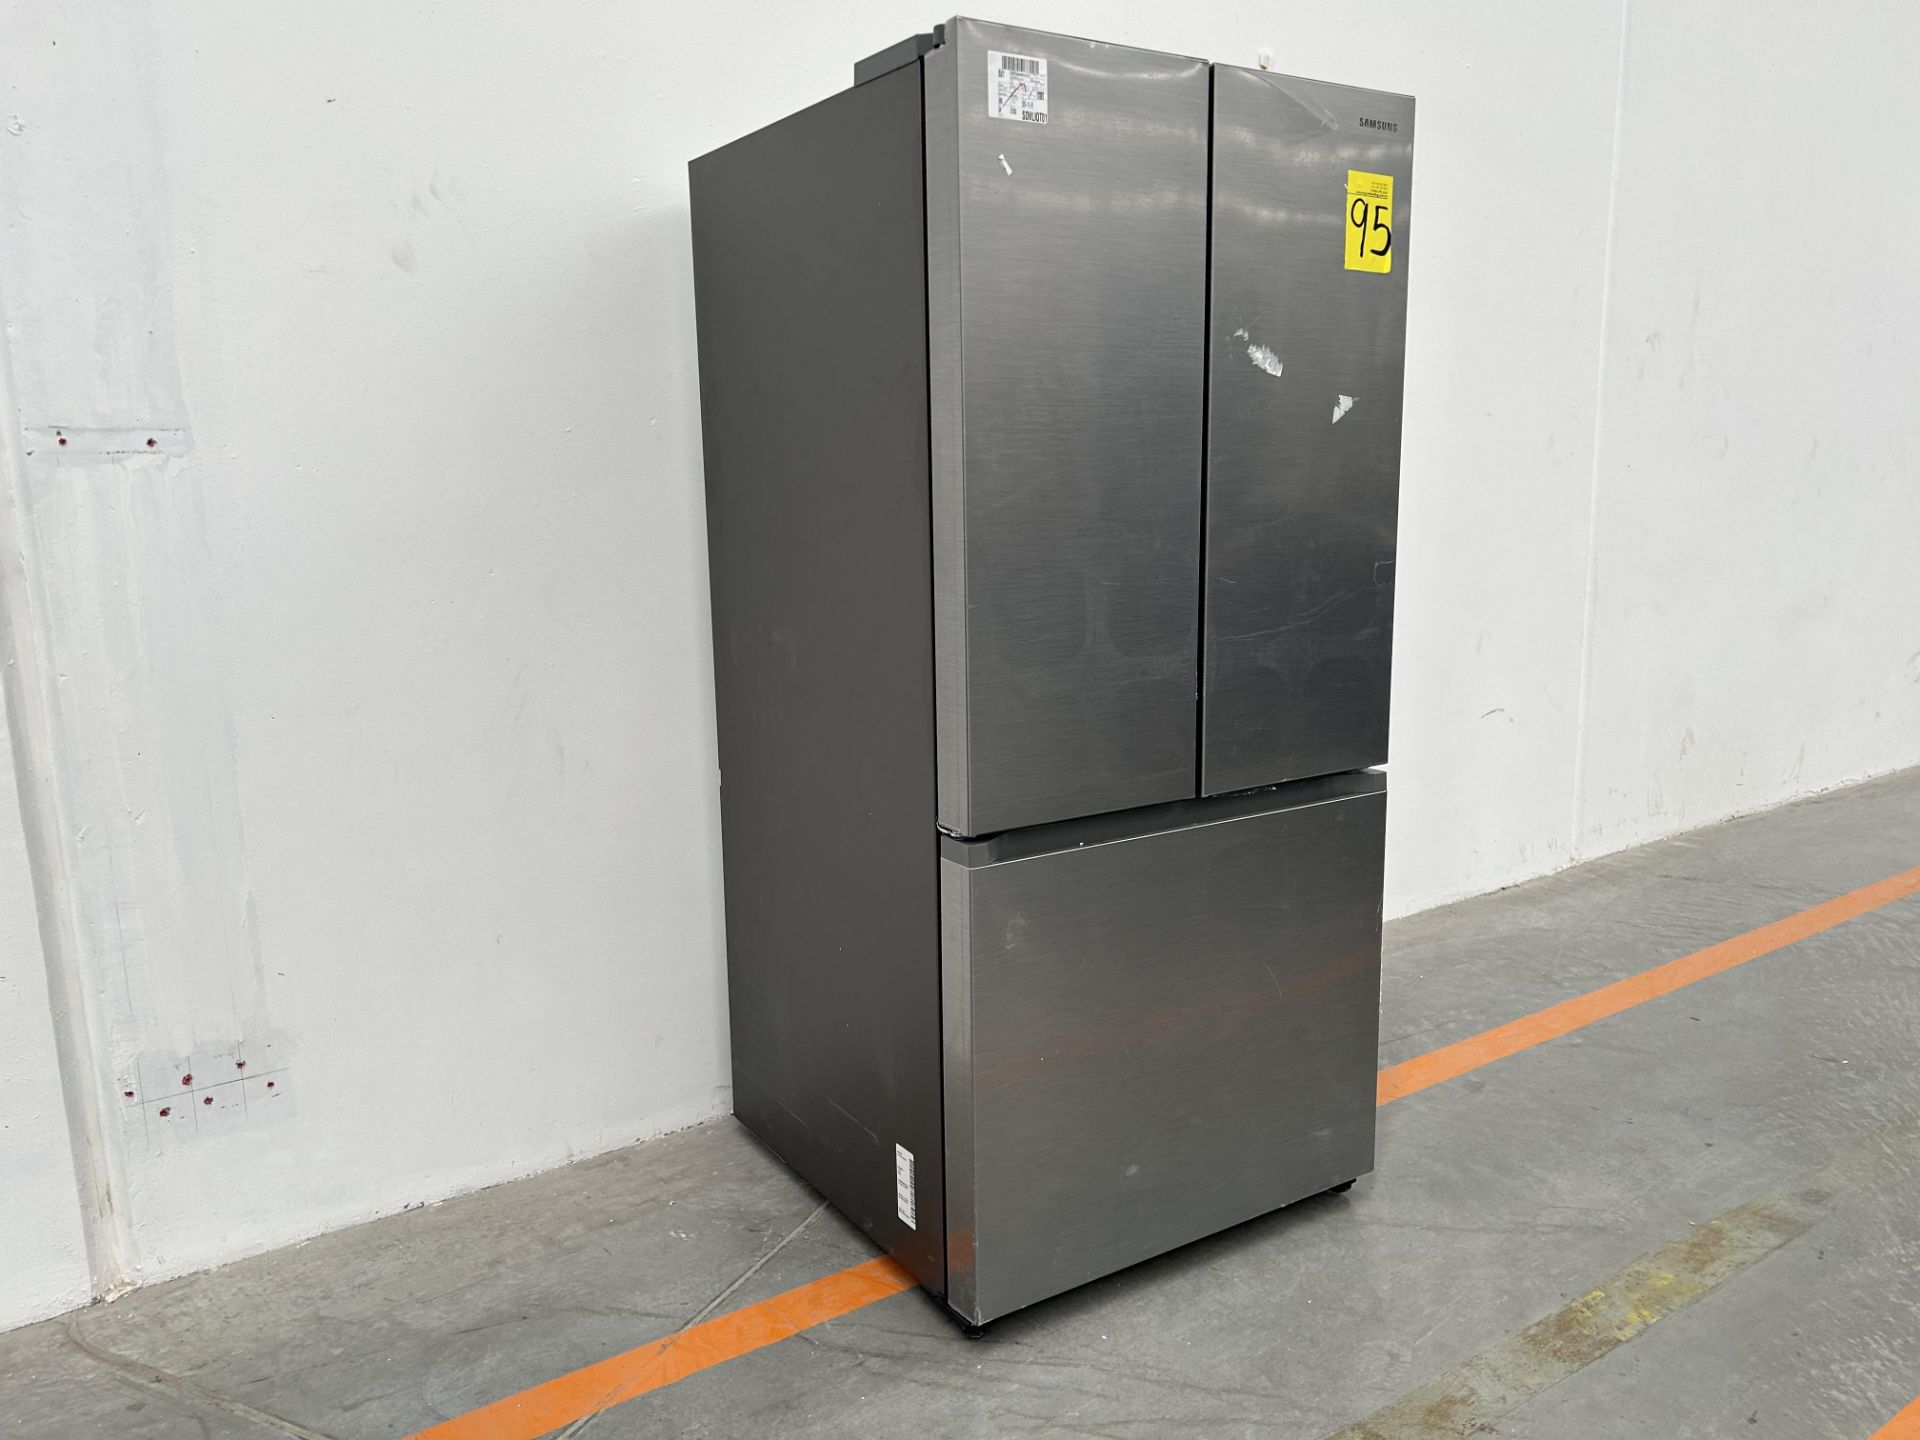 (NUEVO) Refrigerador Marca SAMSUNG, Modelo RF25C5151S9, Serie 00359T, Color GRIS - Image 3 of 4